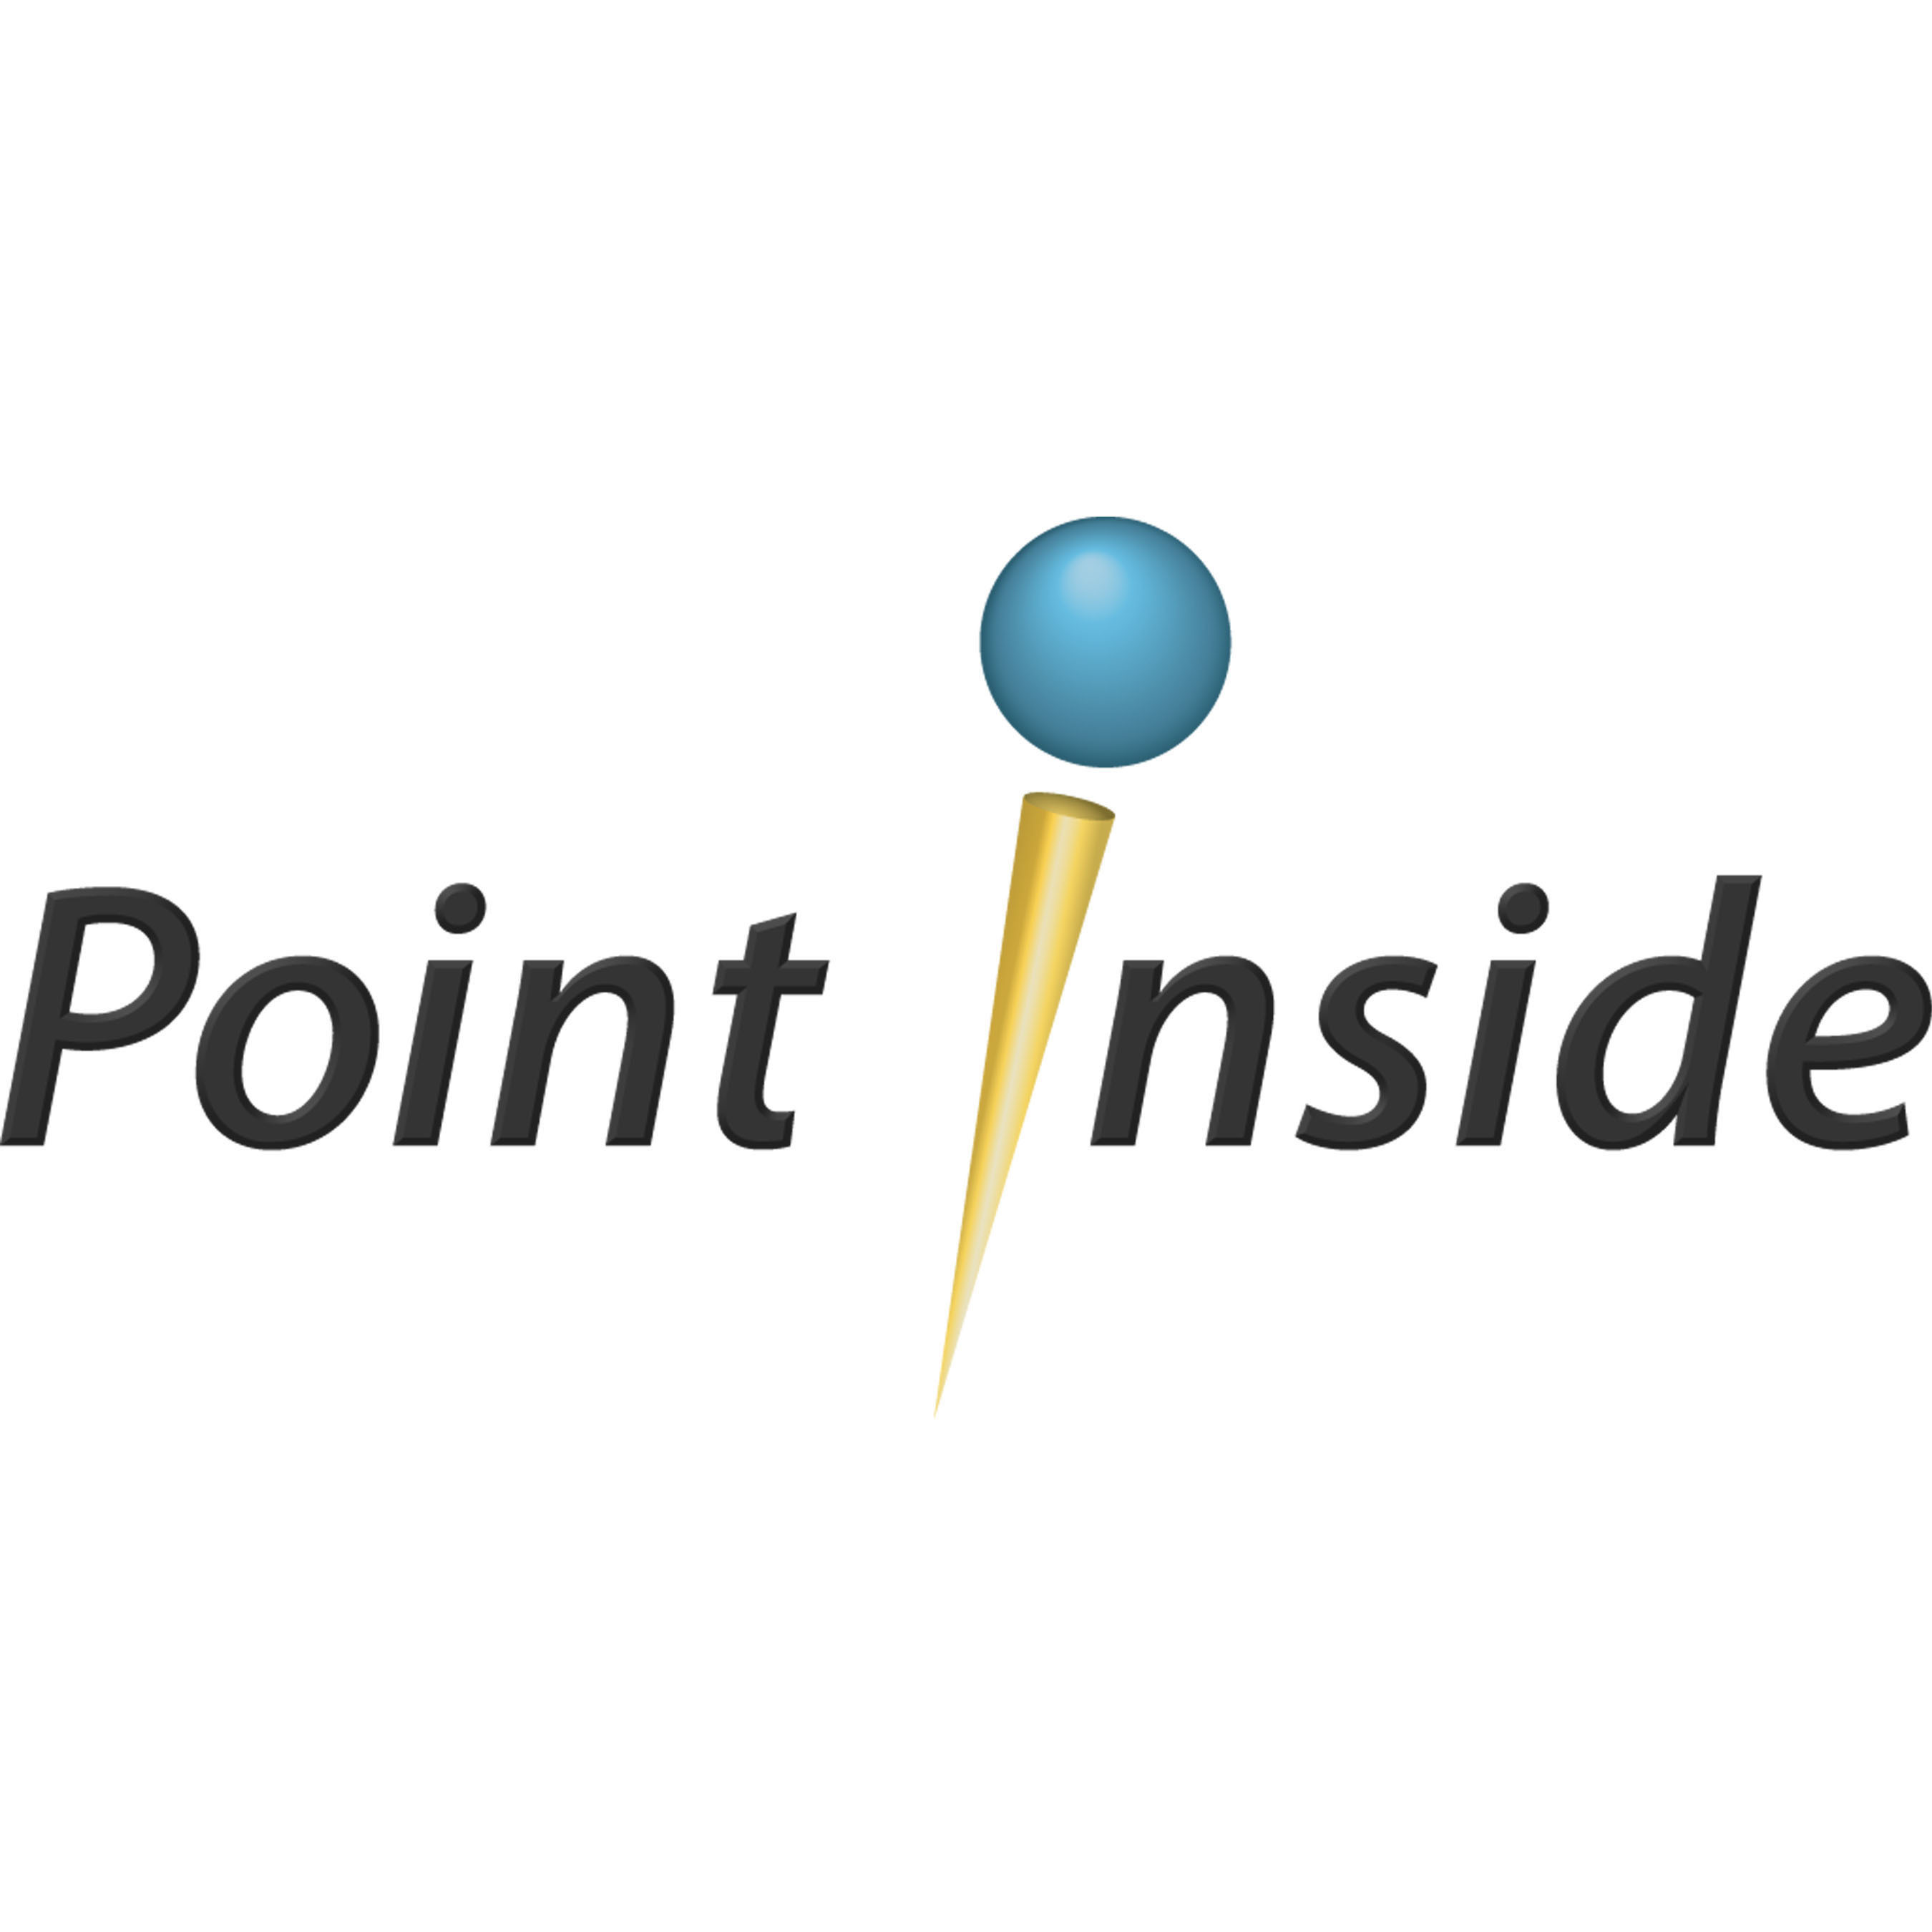 Point Inside Logo. (PRNewsFoto/Lowe's Companies, Inc.) (PRNewsFoto/LOWE'S COMPANIES, INC.)